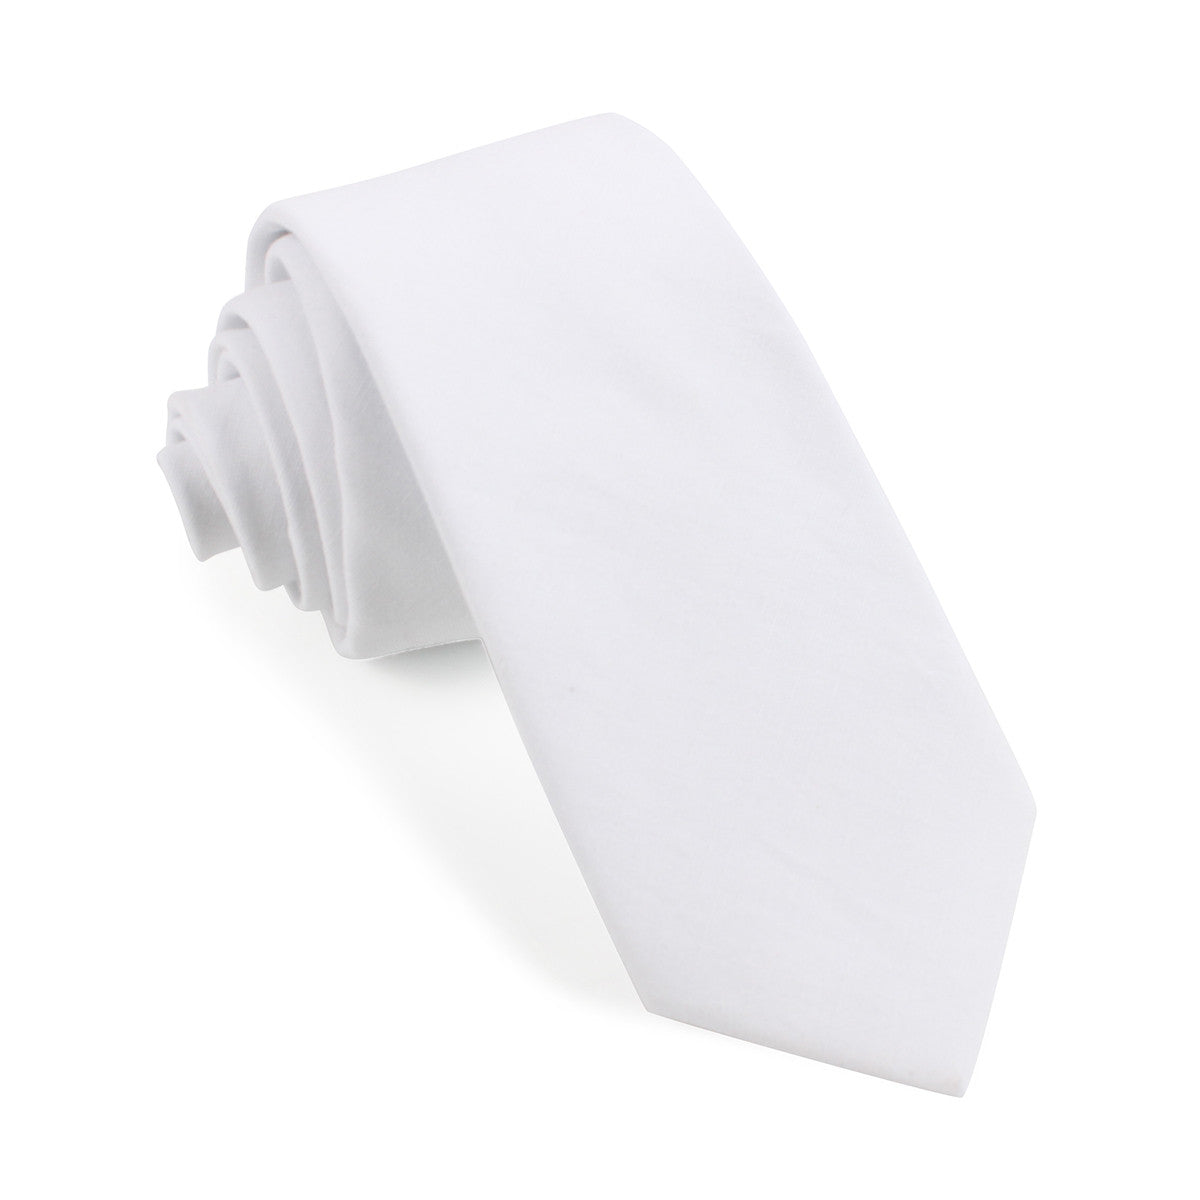 The OTAA White Cotton Skinny Tie